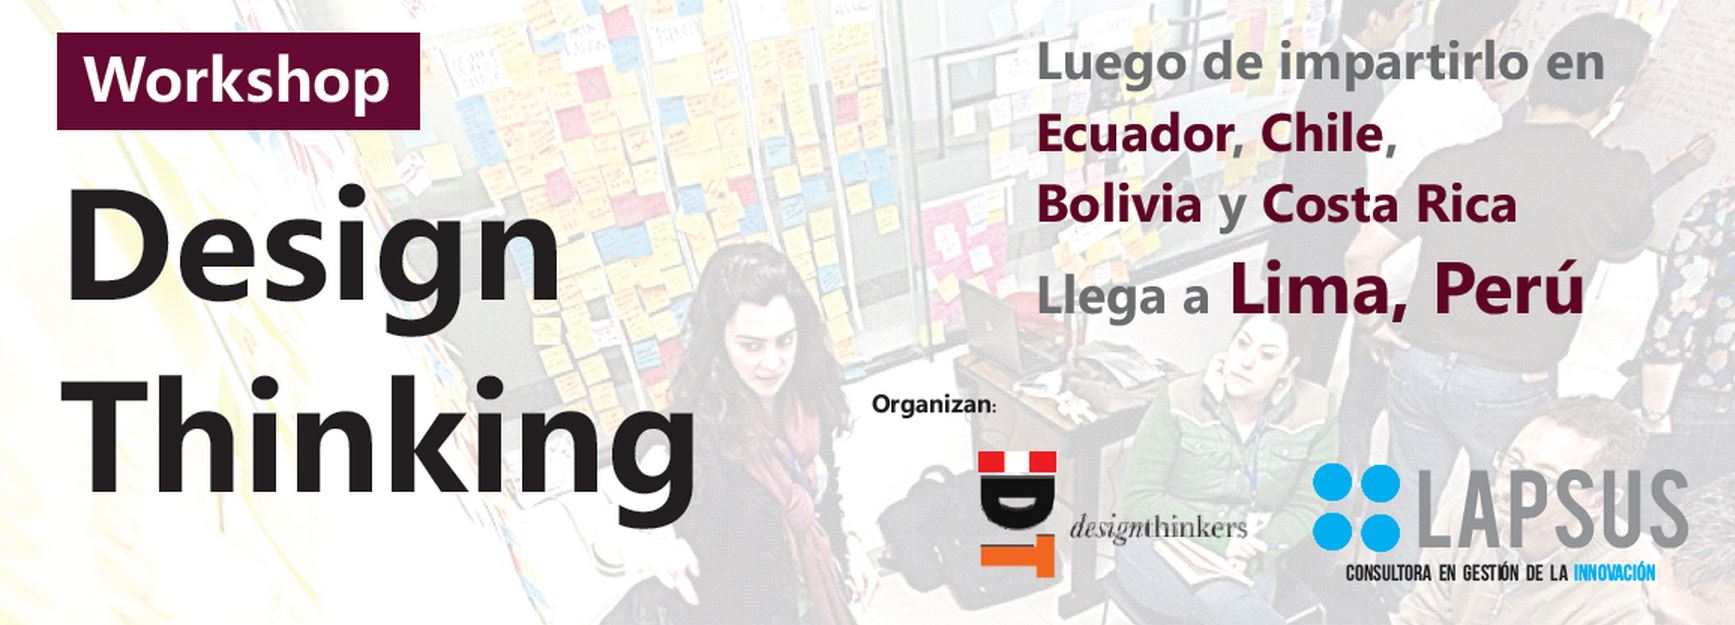 Innovación y Design Thinking - Luis Delgado Corrales Lapsus Design Thinking Perú